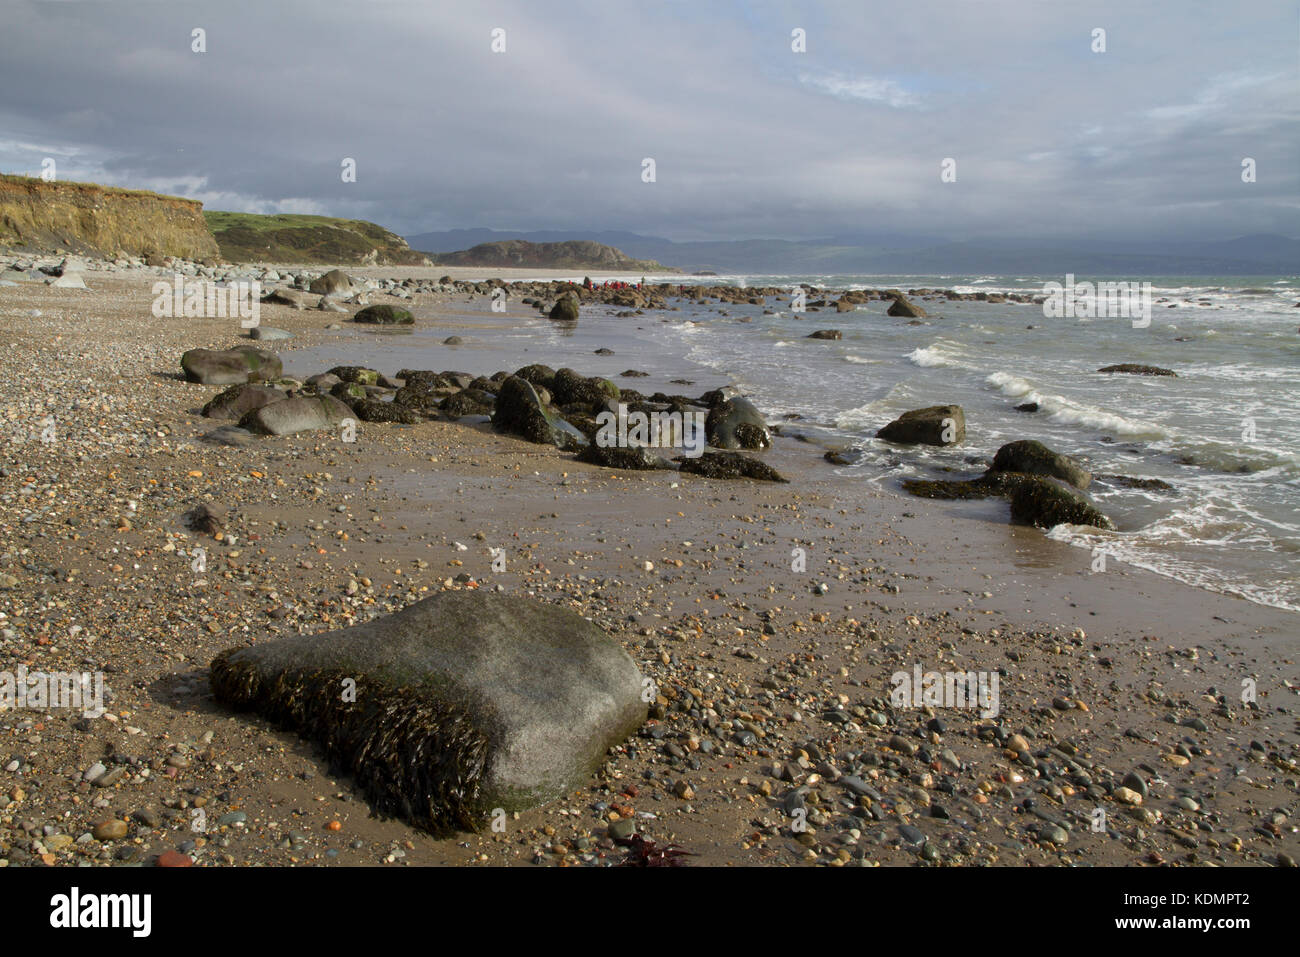 Plage de Criccieth sur la baie de Cardigan, dans le domaine de l'Eifionydd Gwynedd au Pays de Galles. Banque D'Images